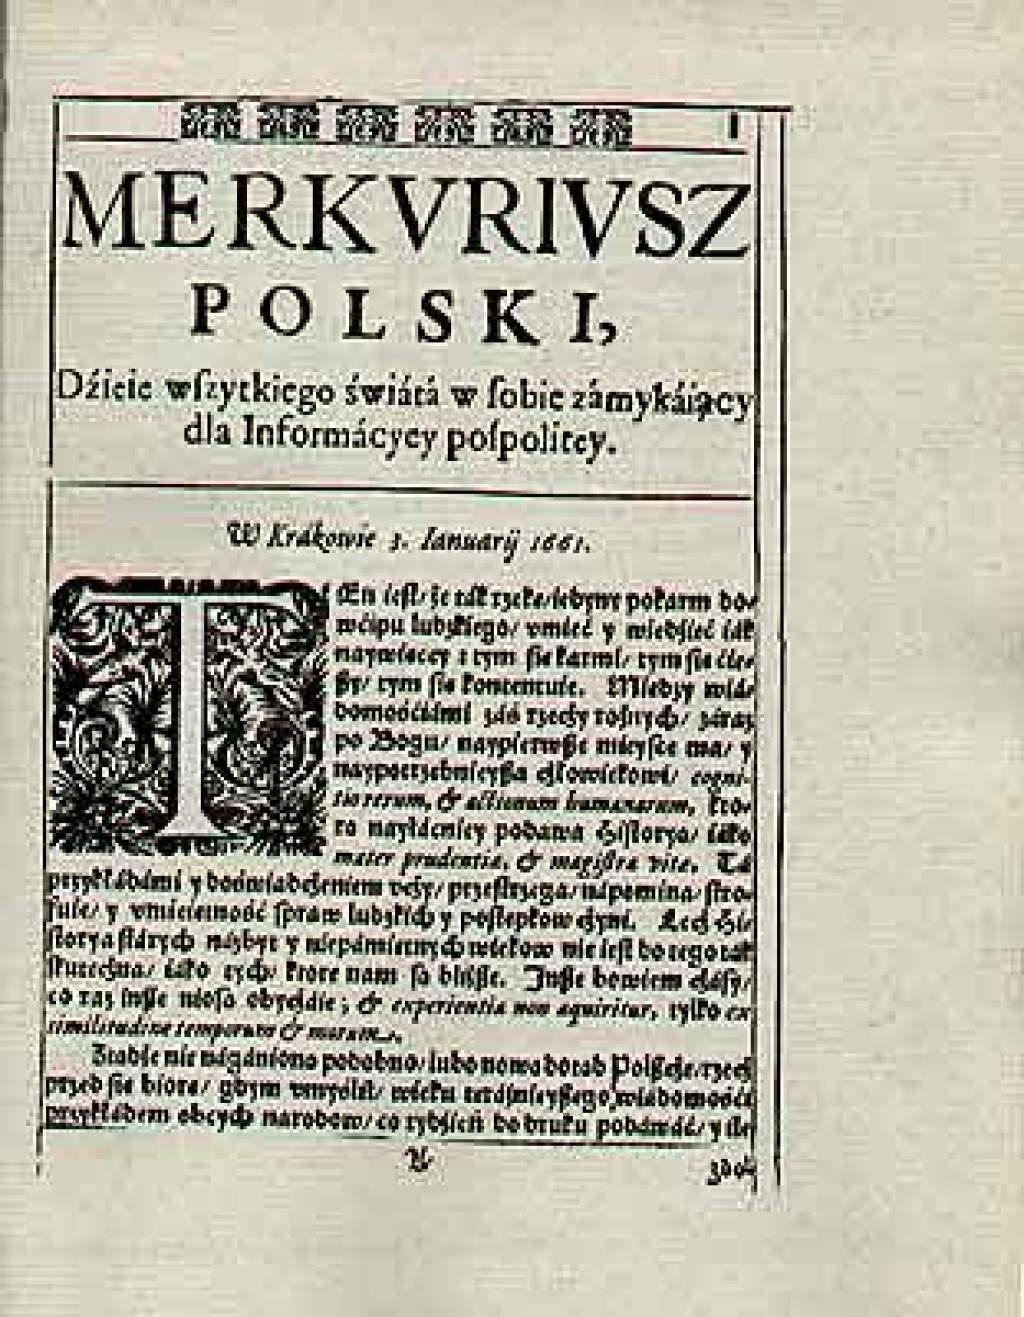 Merkuriusz Polski Ordynaryjny 1661 [reprint]